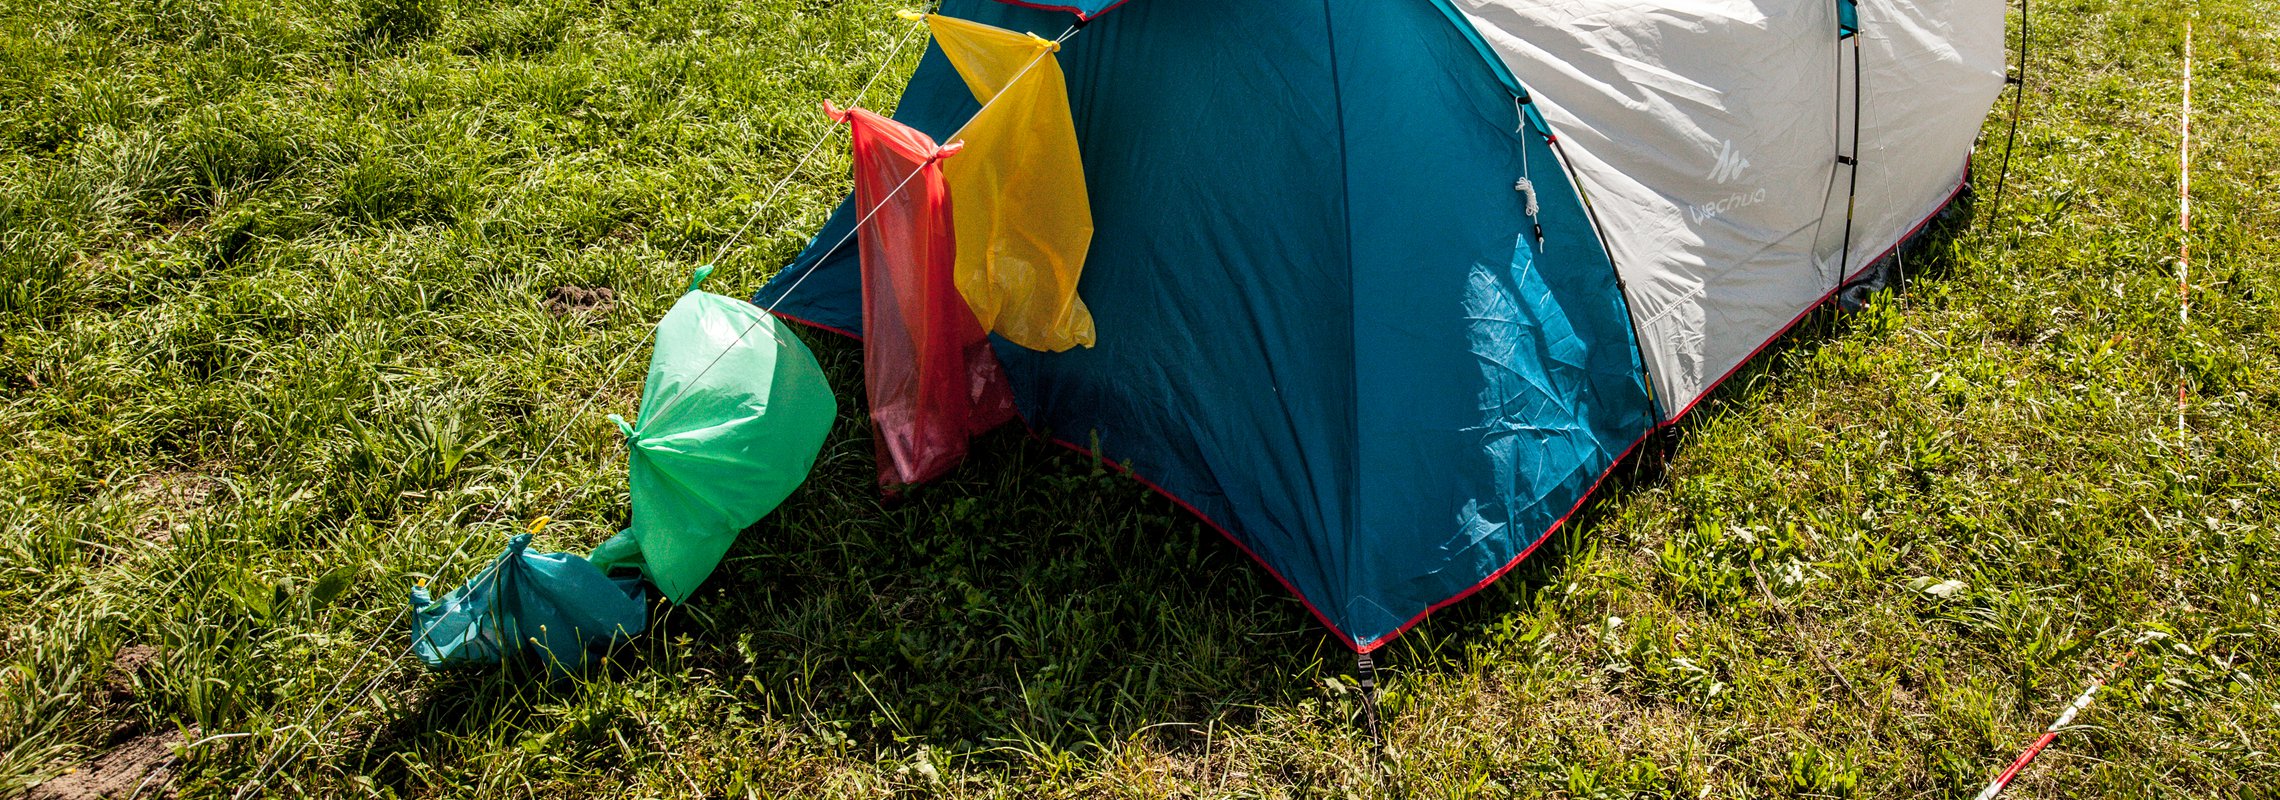 An einem Zelt hängen verschiedenfarbige Säcke zur Abfalltrennung.